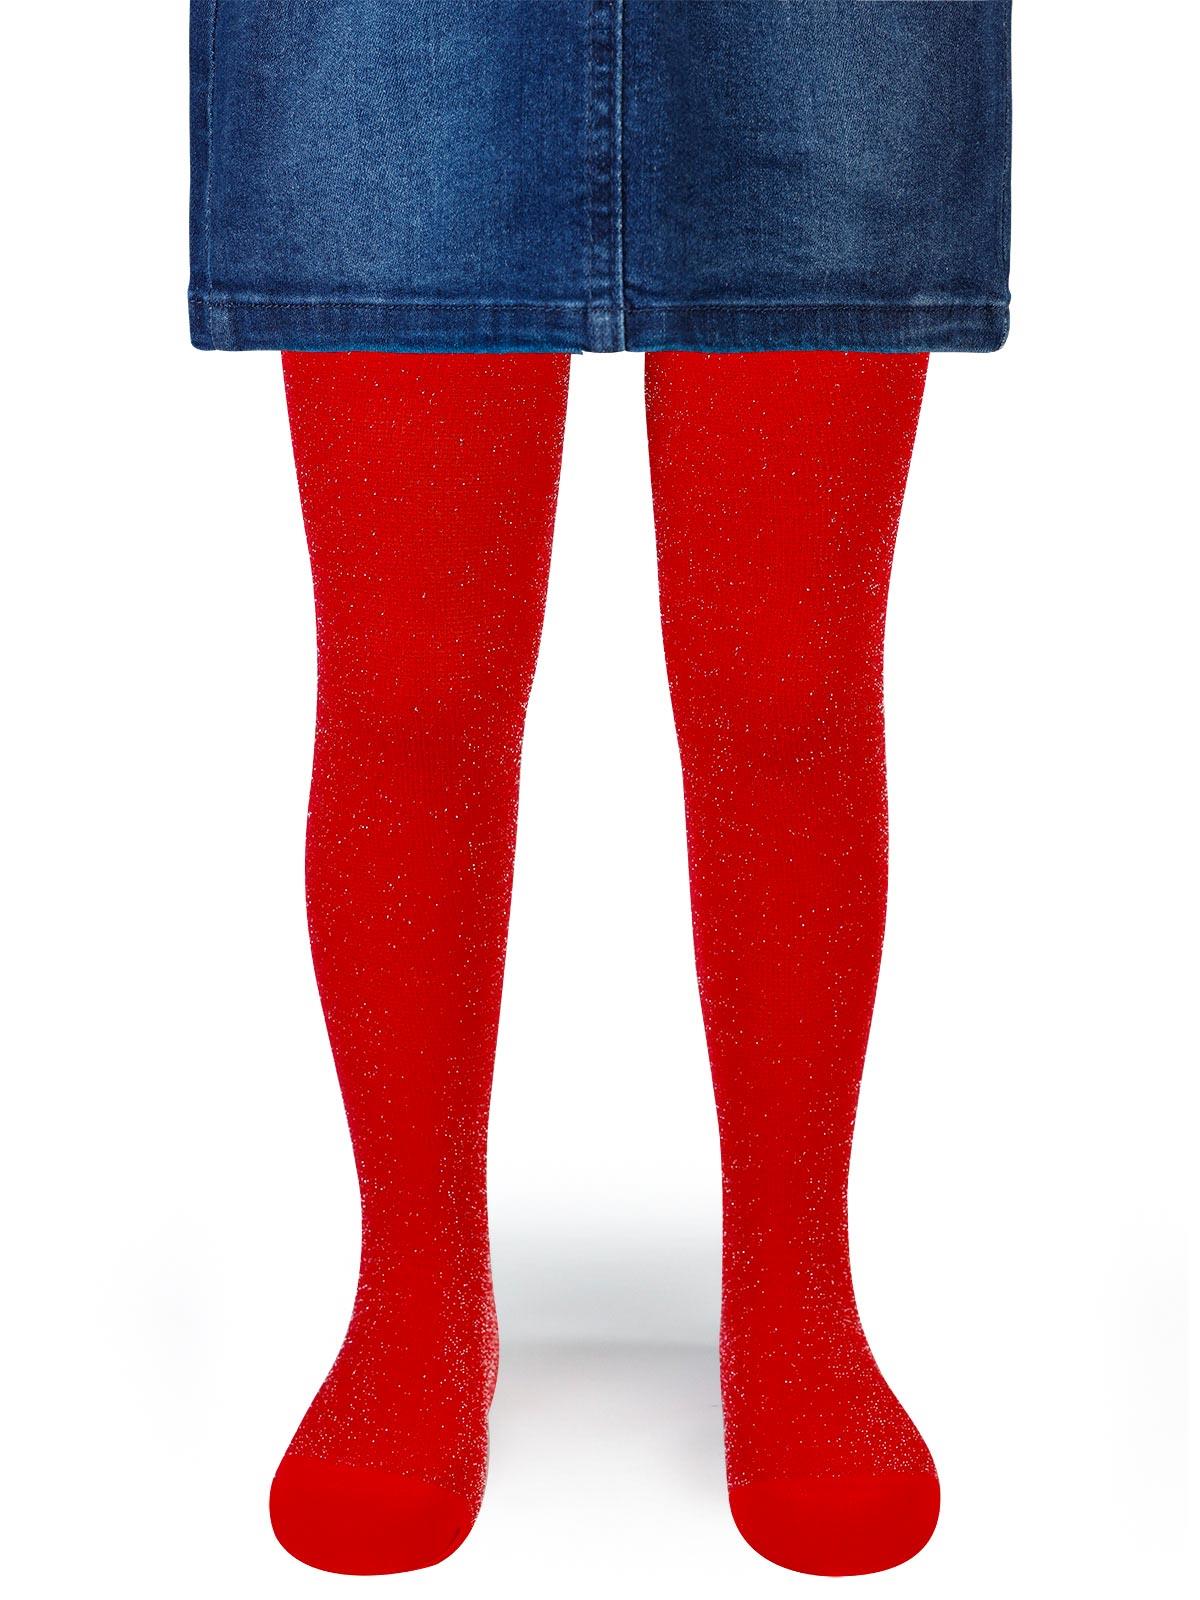 Artı Kız Çocuk Taçlı Külotlu Çorap 1-9 Yaş Kırmızı